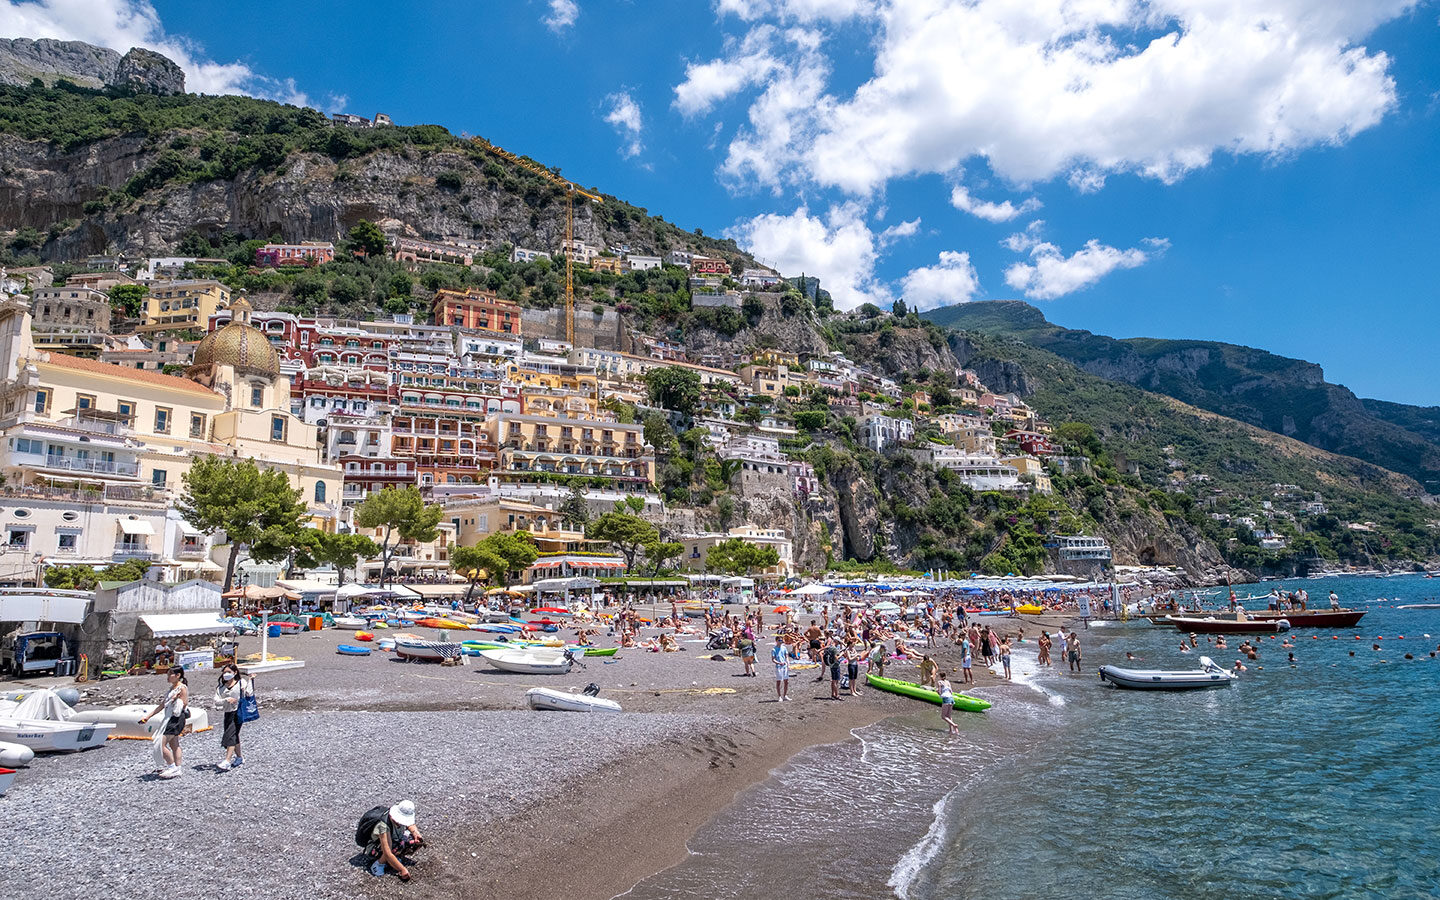 The beach in Positano on an Amalfi Coast day trip